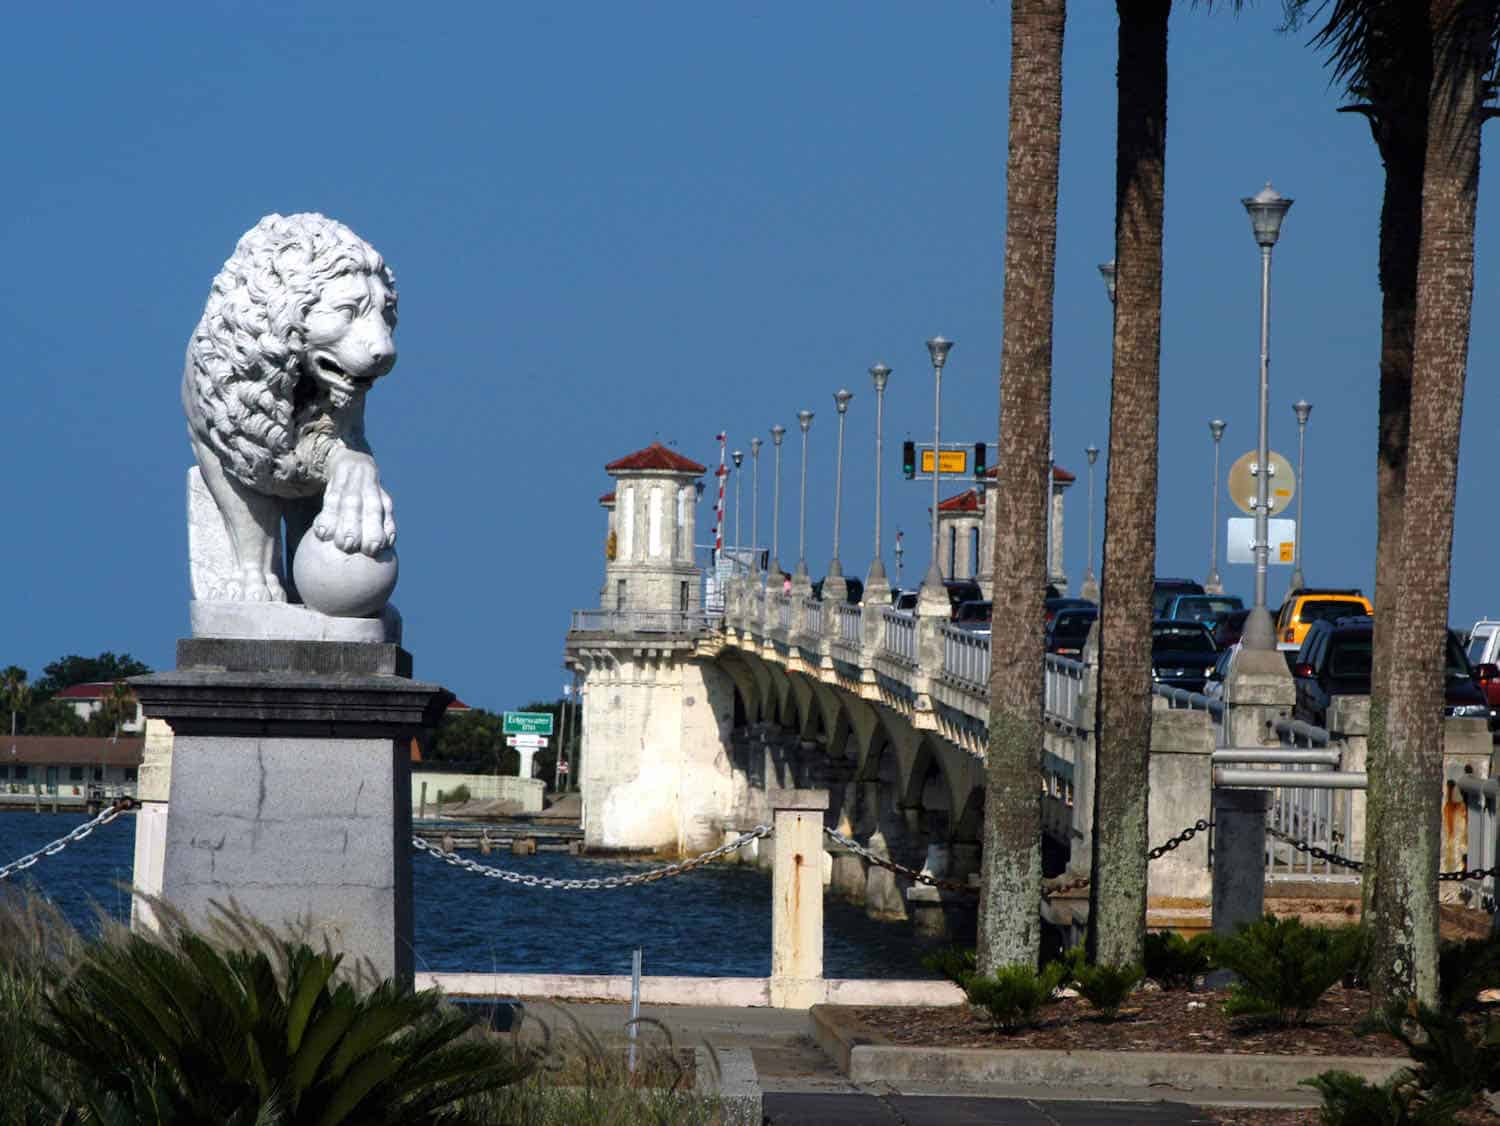 Lion statue next to a bridge